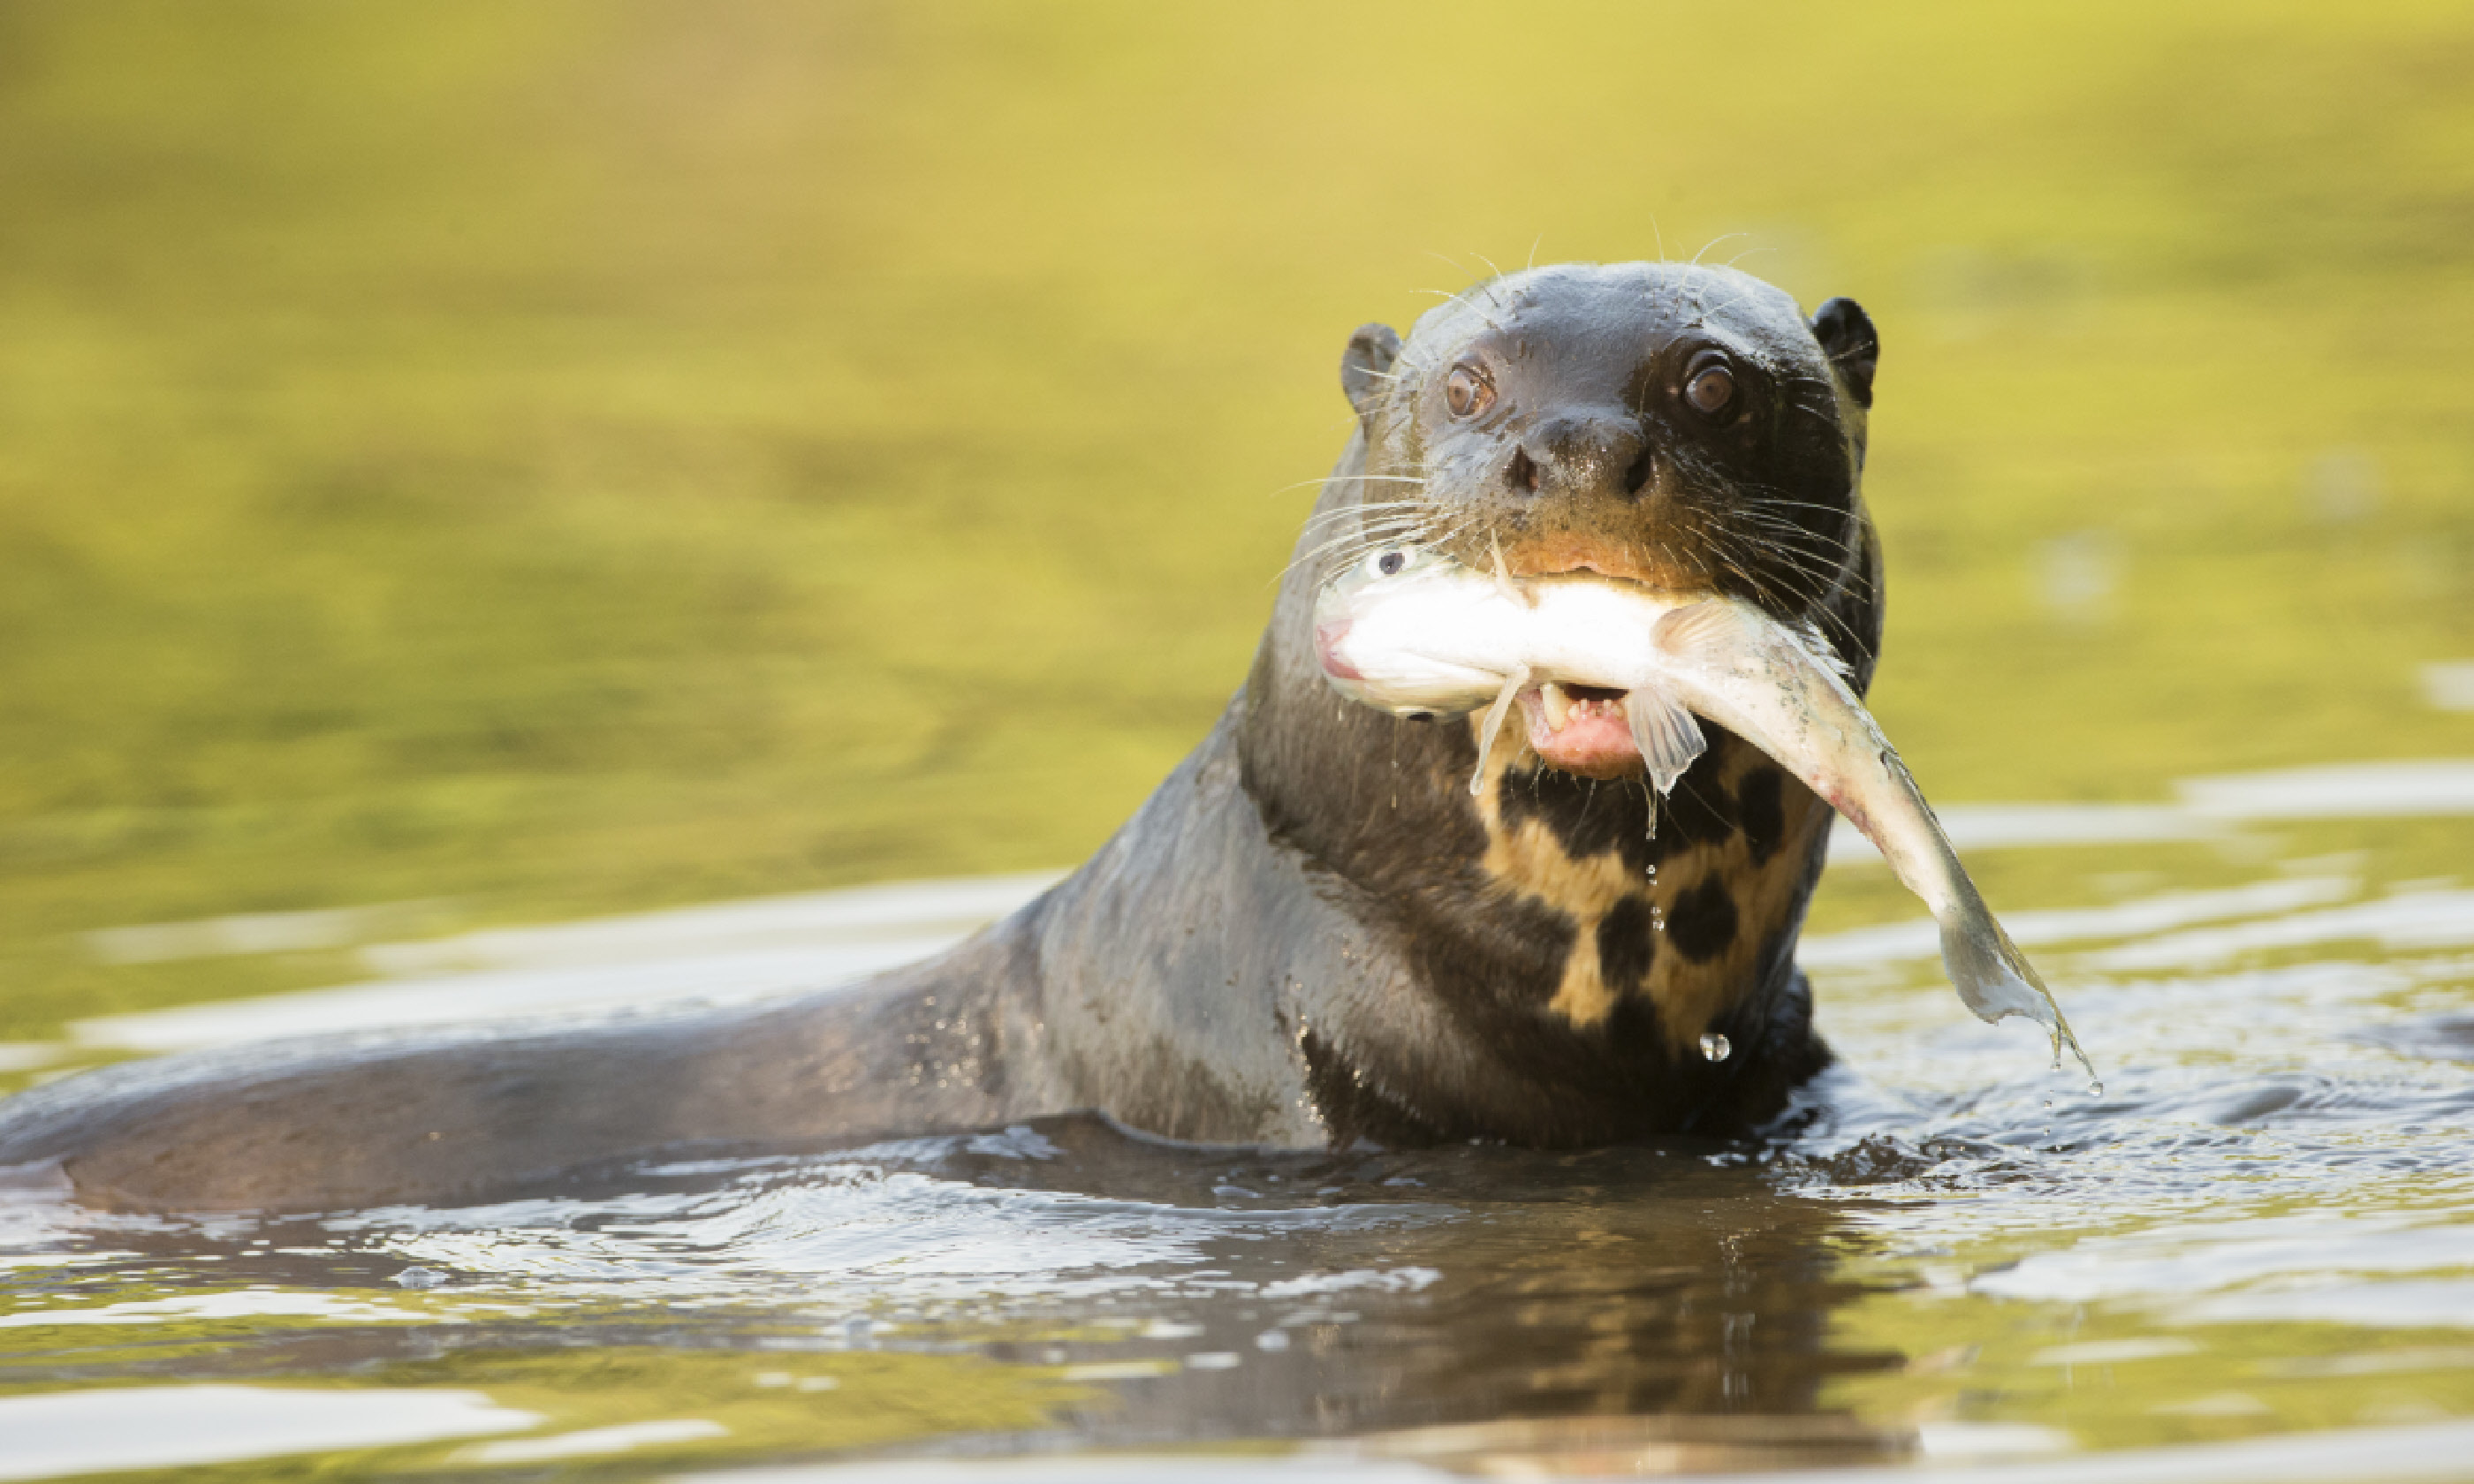 Giant otter (Shutterstock)